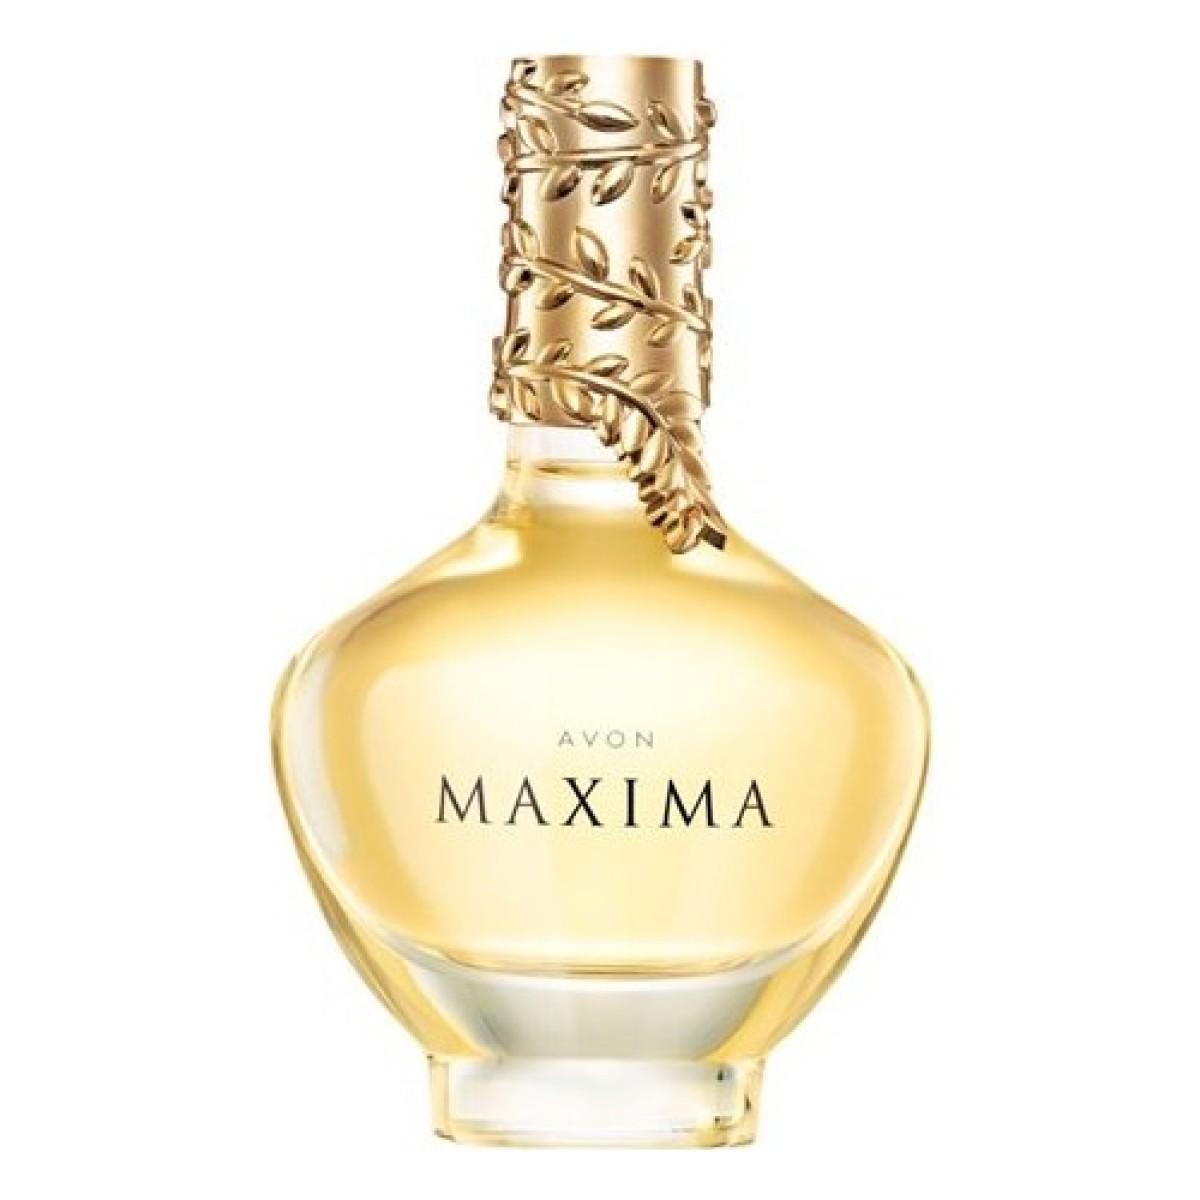 Avon Maxima EDP Oryantal Kadın Parfüm 50 ml